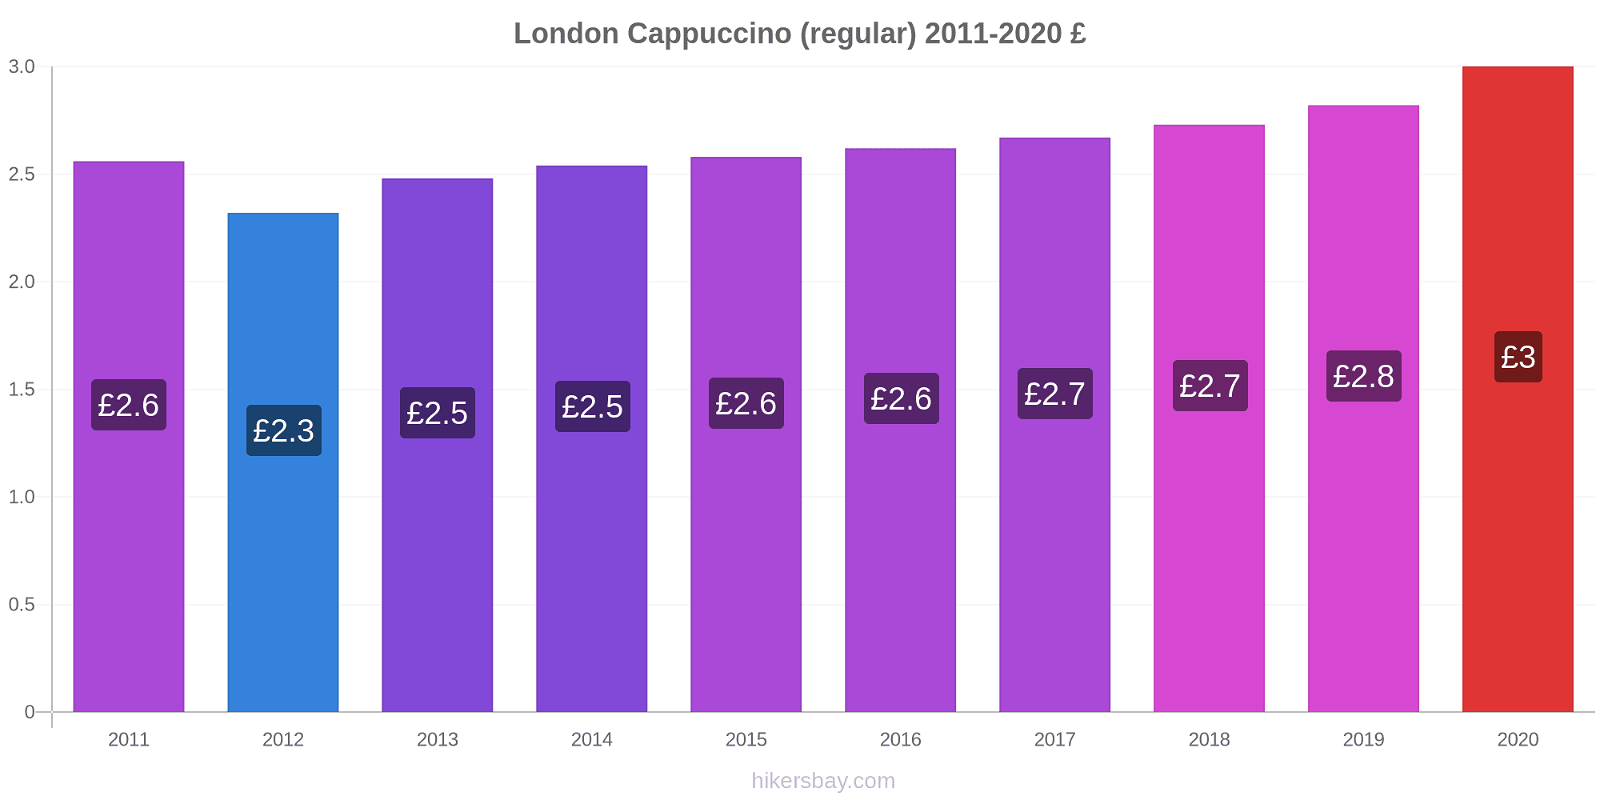 London price changes Cappuccino (regular) hikersbay.com